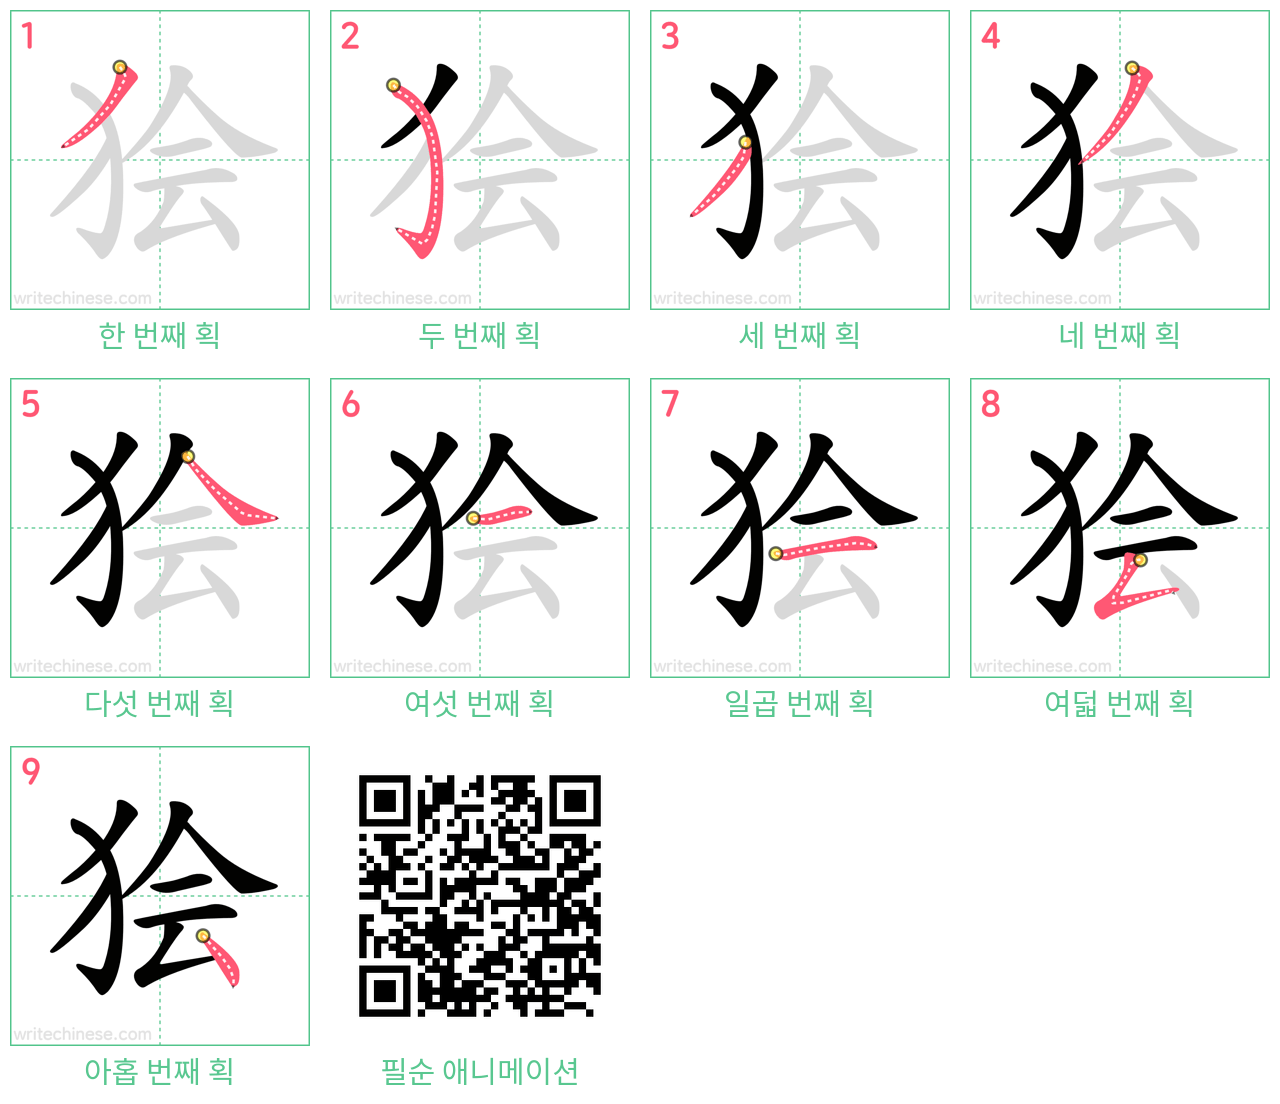 狯 step-by-step stroke order diagrams